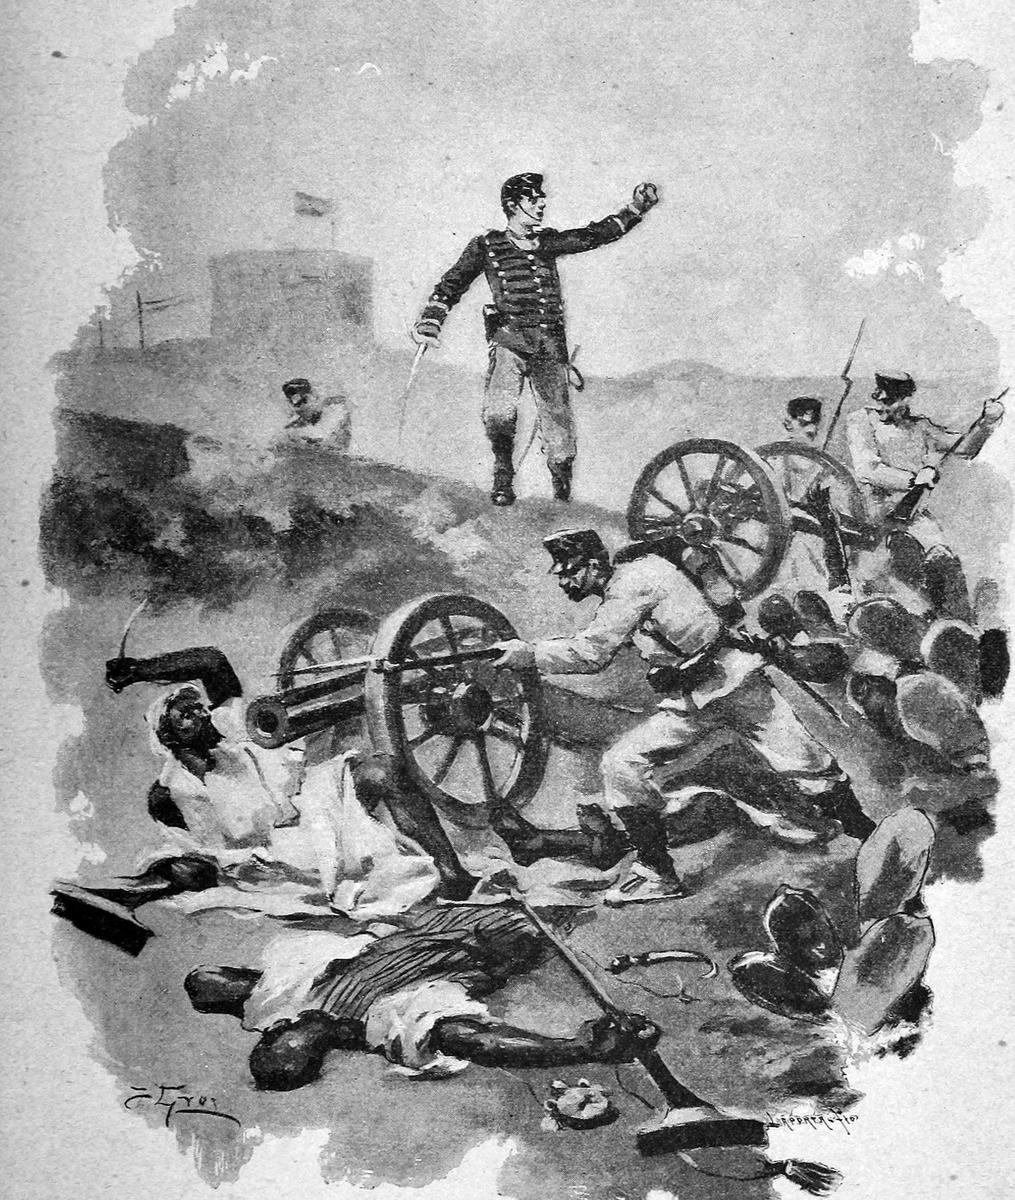 Литография героических поступков Примо де Риверы. 1893 год. Источник: Википедия